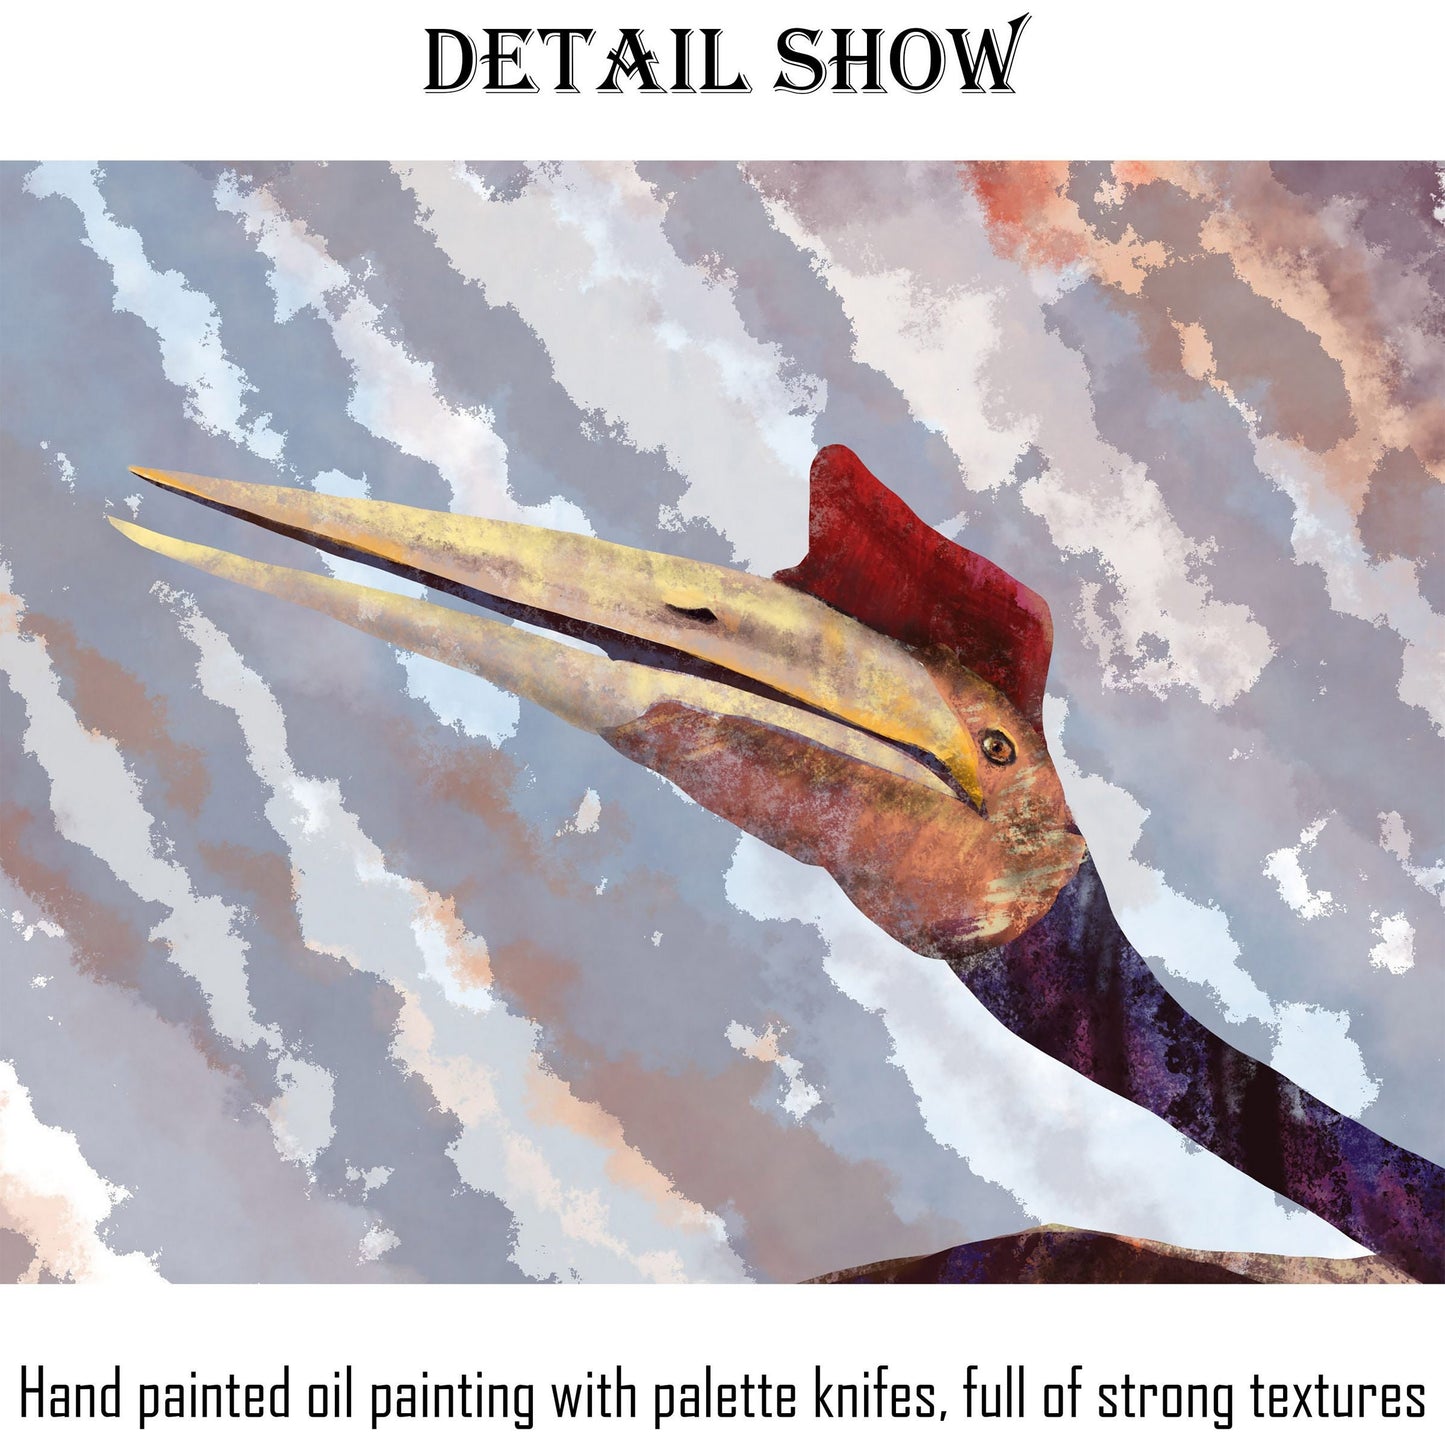 Pterosaur Prints Art, Dinosaurs Print, Wall Décor Dorm, Abstract Artwork, Art Prints, Artwork Original, Modern Art, Original Art Abstract